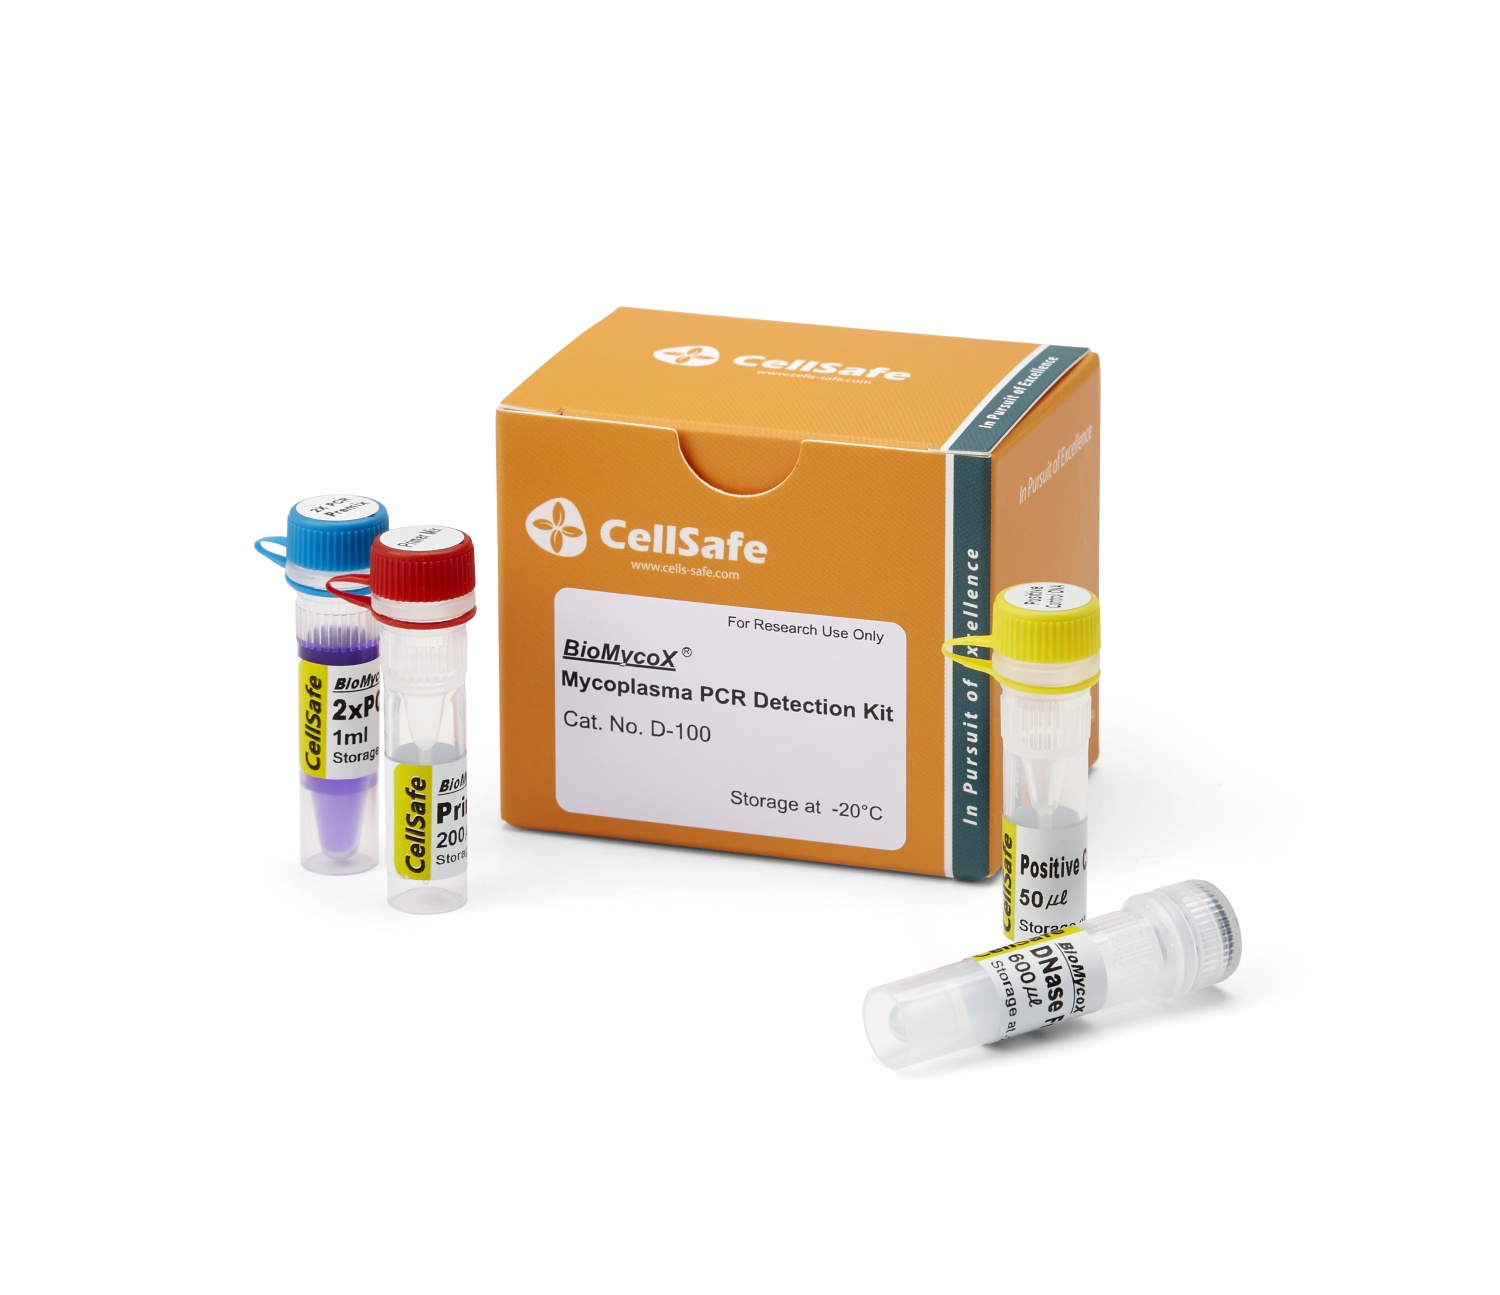 BioMycoX® Mycoplasma PCR Detection Kit